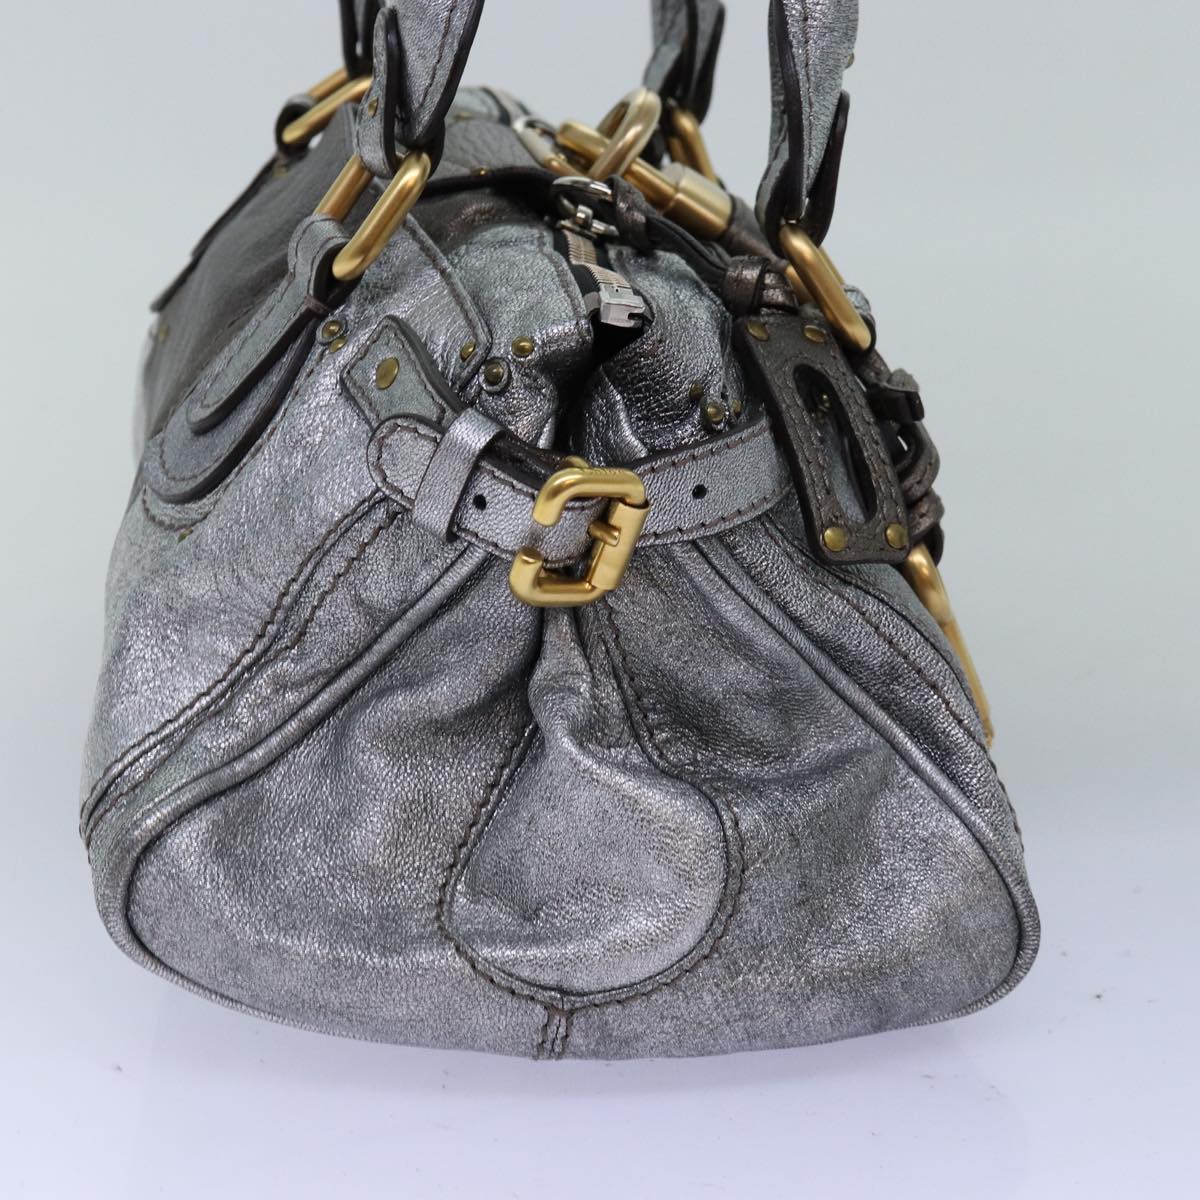 Chloe Paddington Hand Bag Leather Silver Auth yk12617